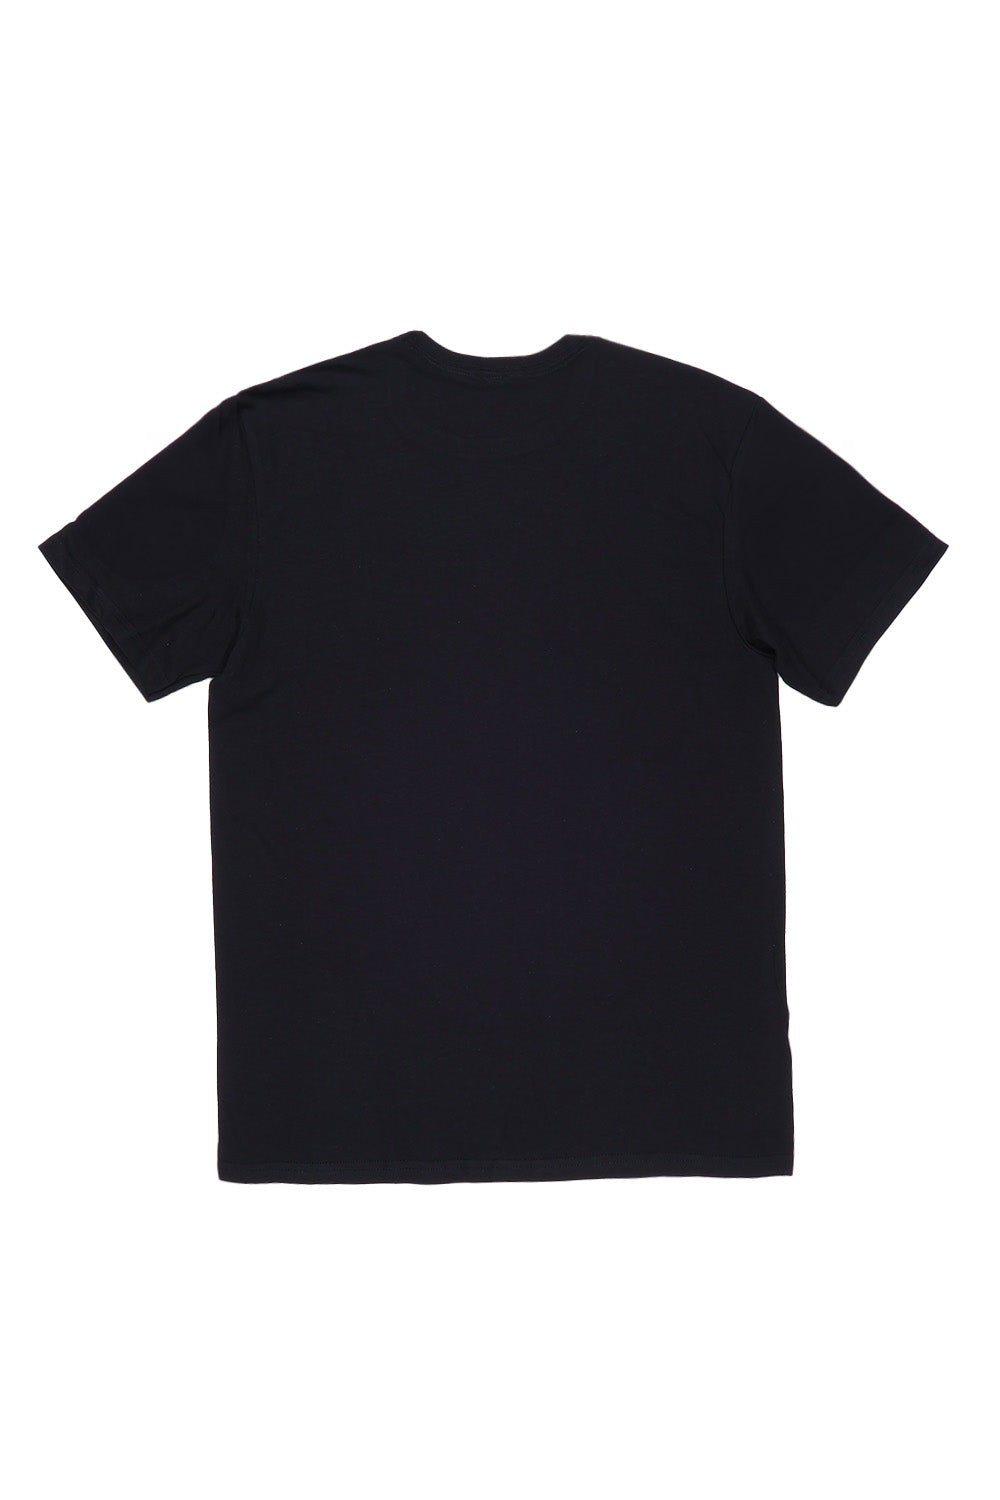 C'est La Vie Paris Slogan T-Shirt In Black (Custom Pack)